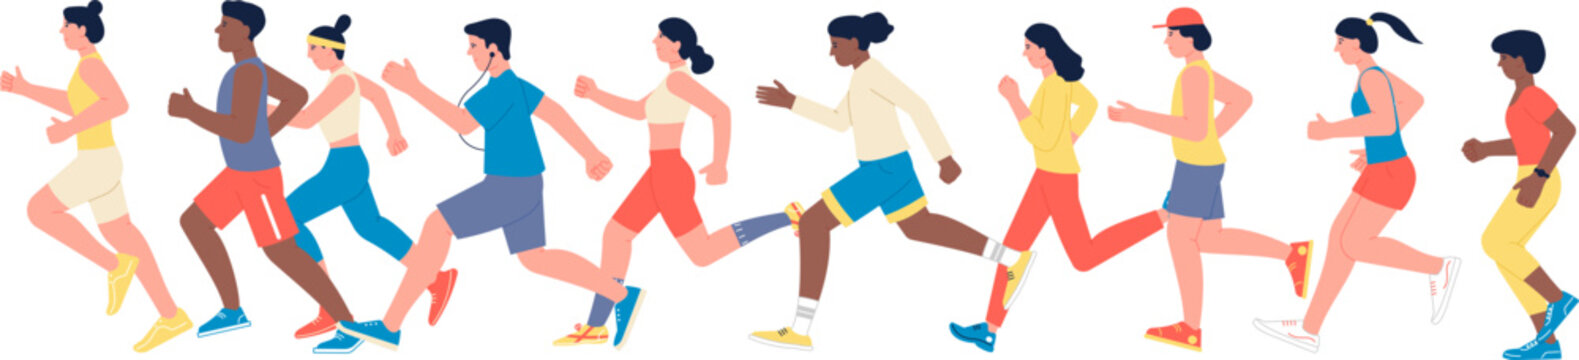 Running people. Marathon athletes. Men and women jogging